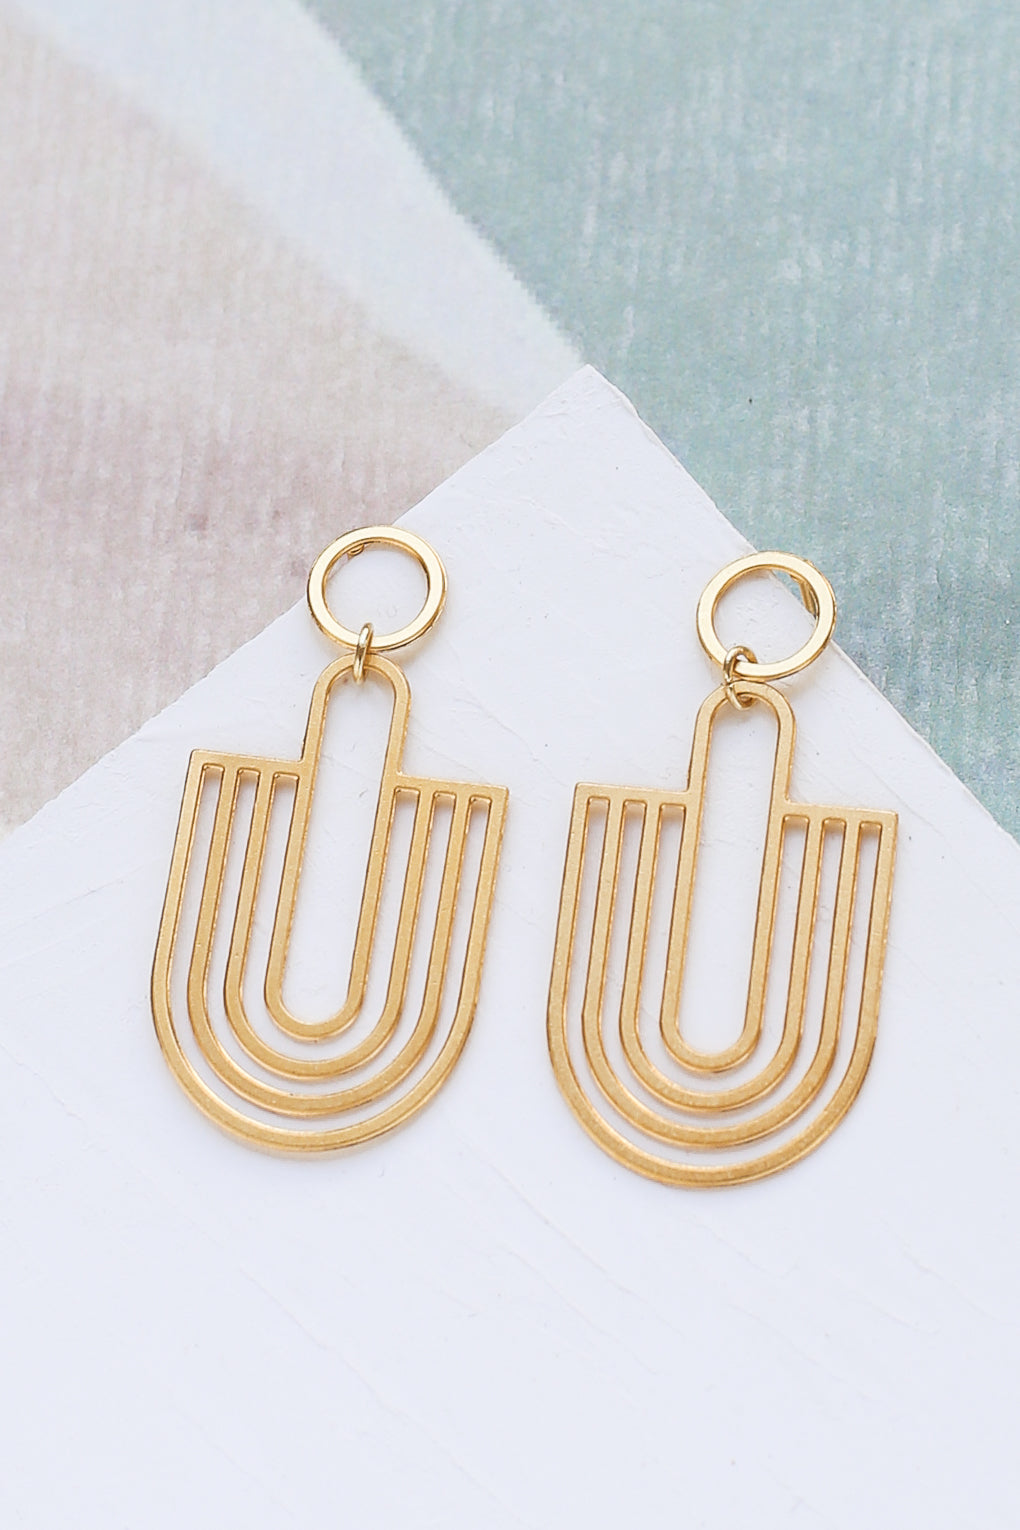 Golden earrings - Midaly